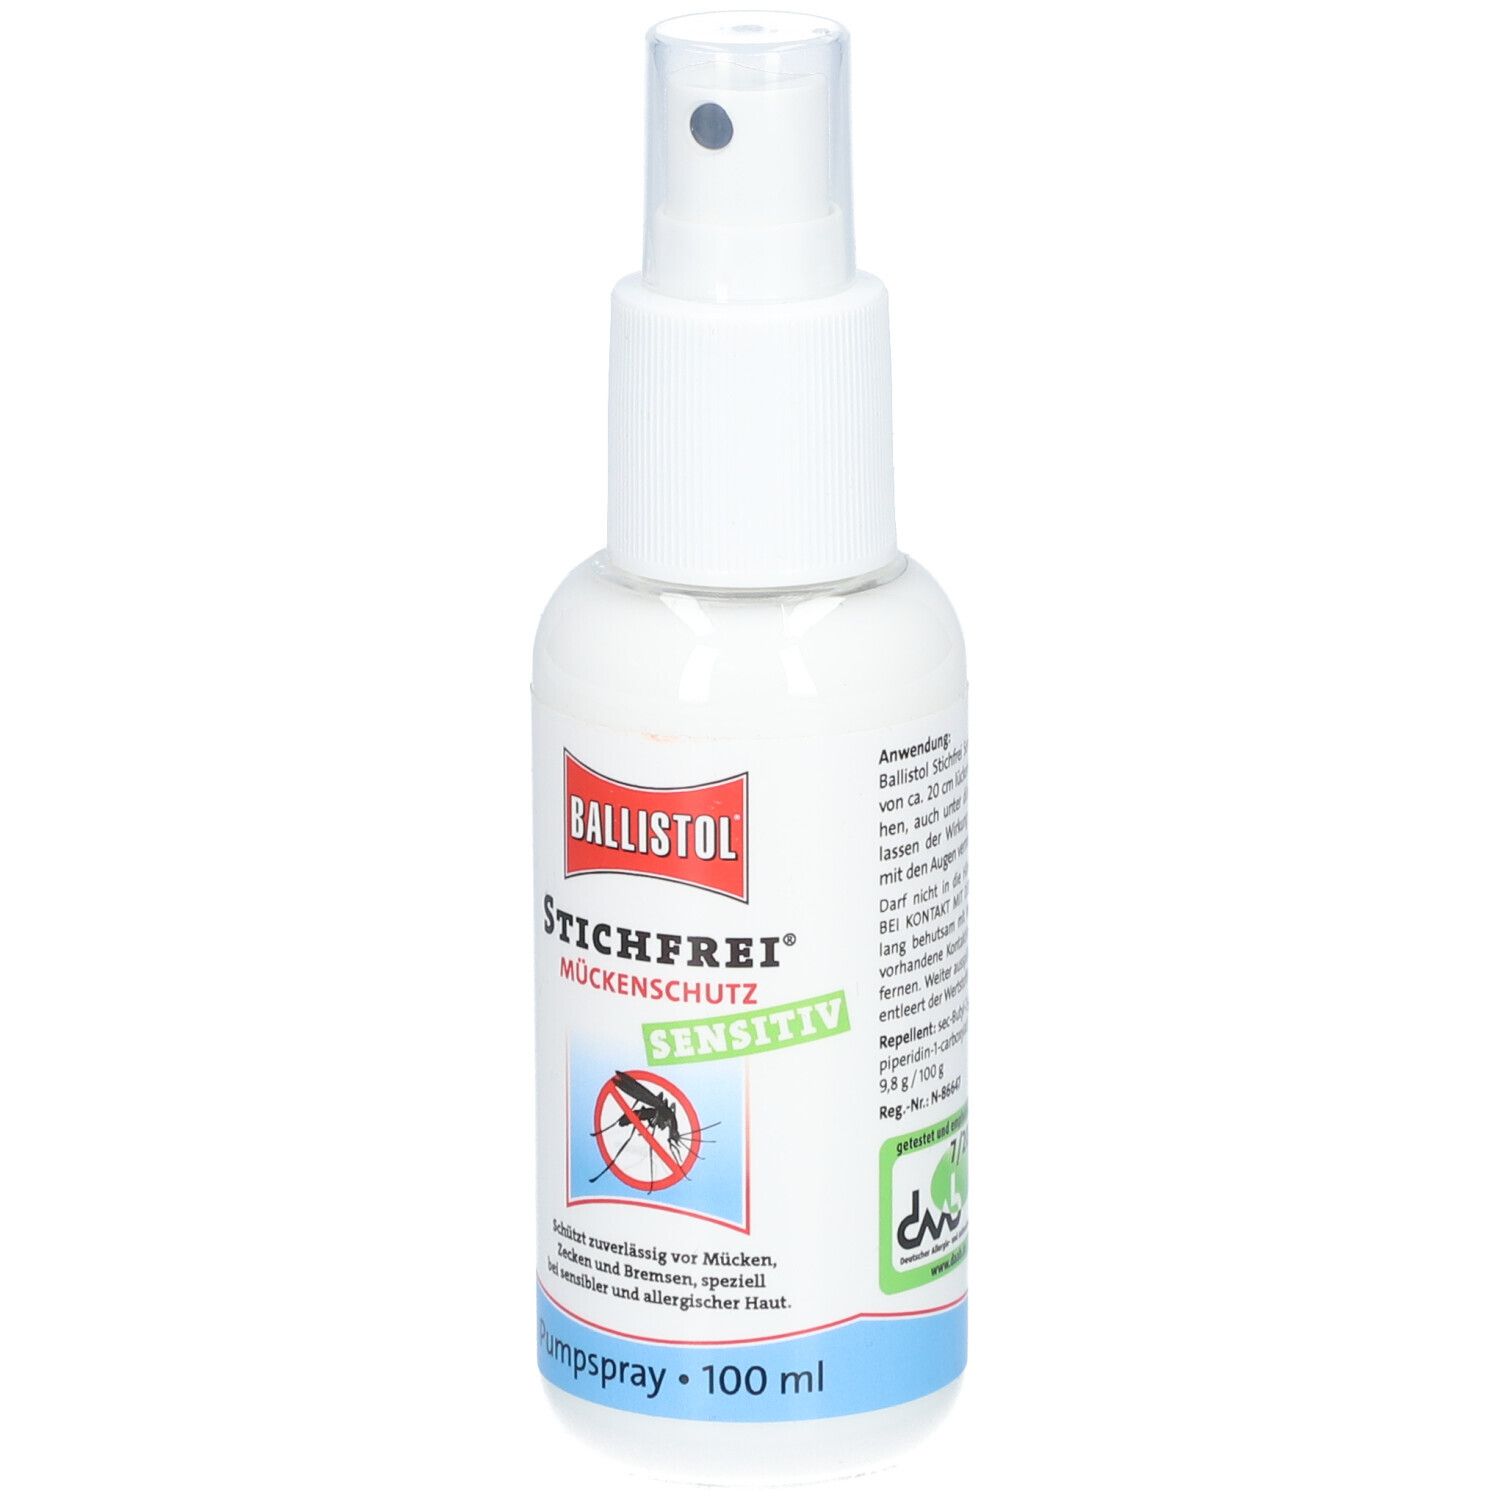 Ballistol Stichfrei® Sensitiv Mückenspray 100 ml - SHOP APOTHEKE